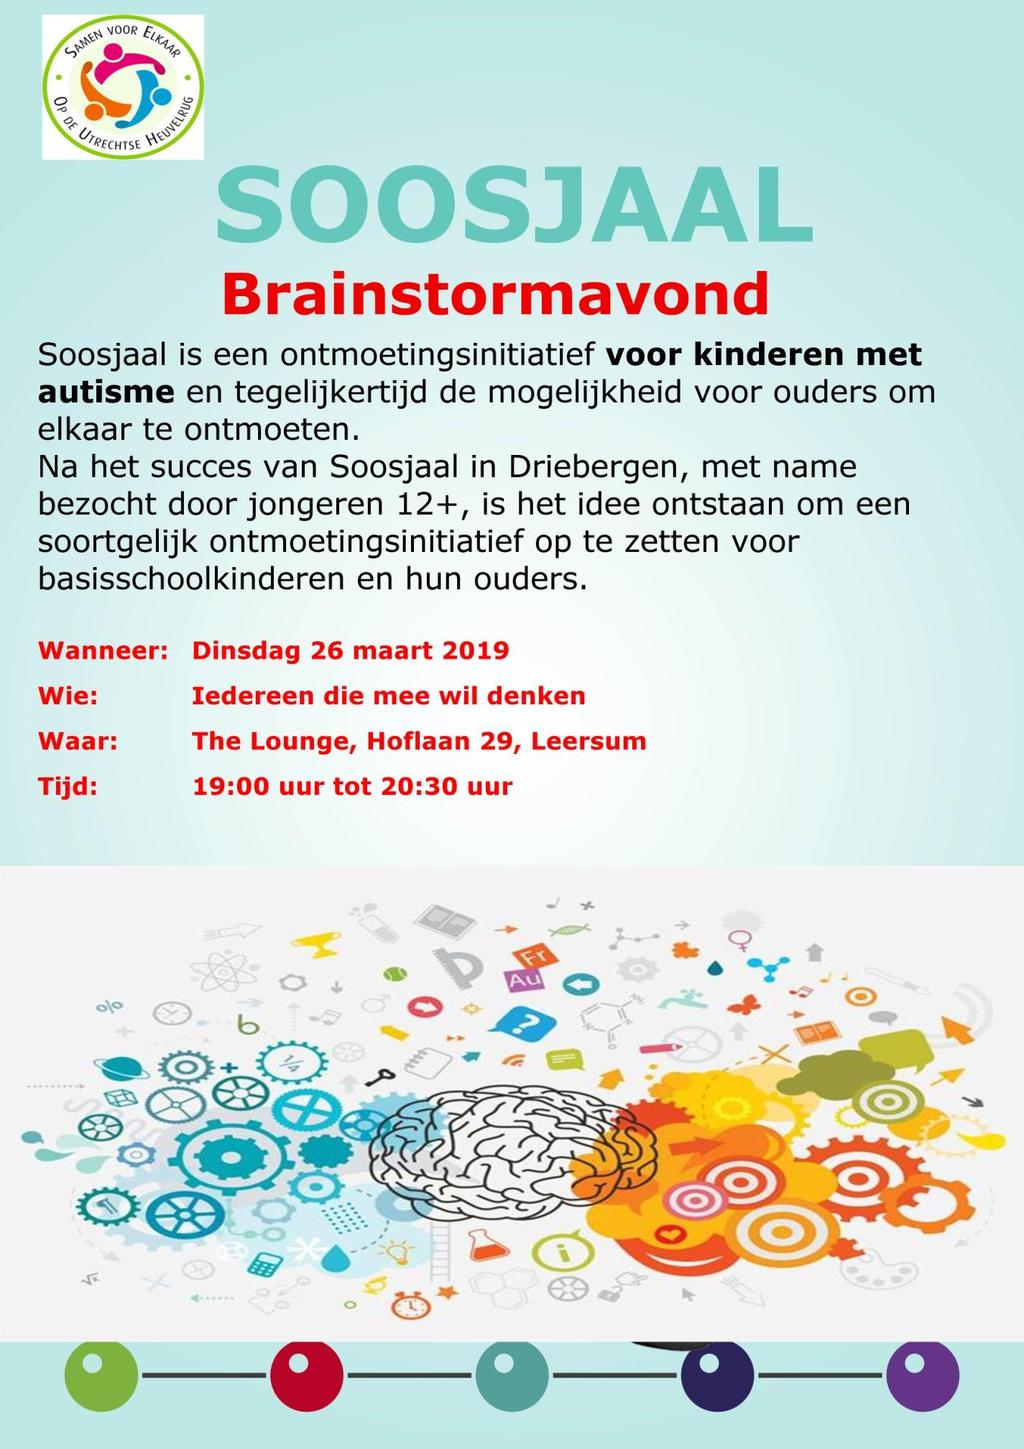 Sociaal Dorpsteam: Brainstormavond over autisme op 26 maart 2019-02-22 Campagne Uw huis op